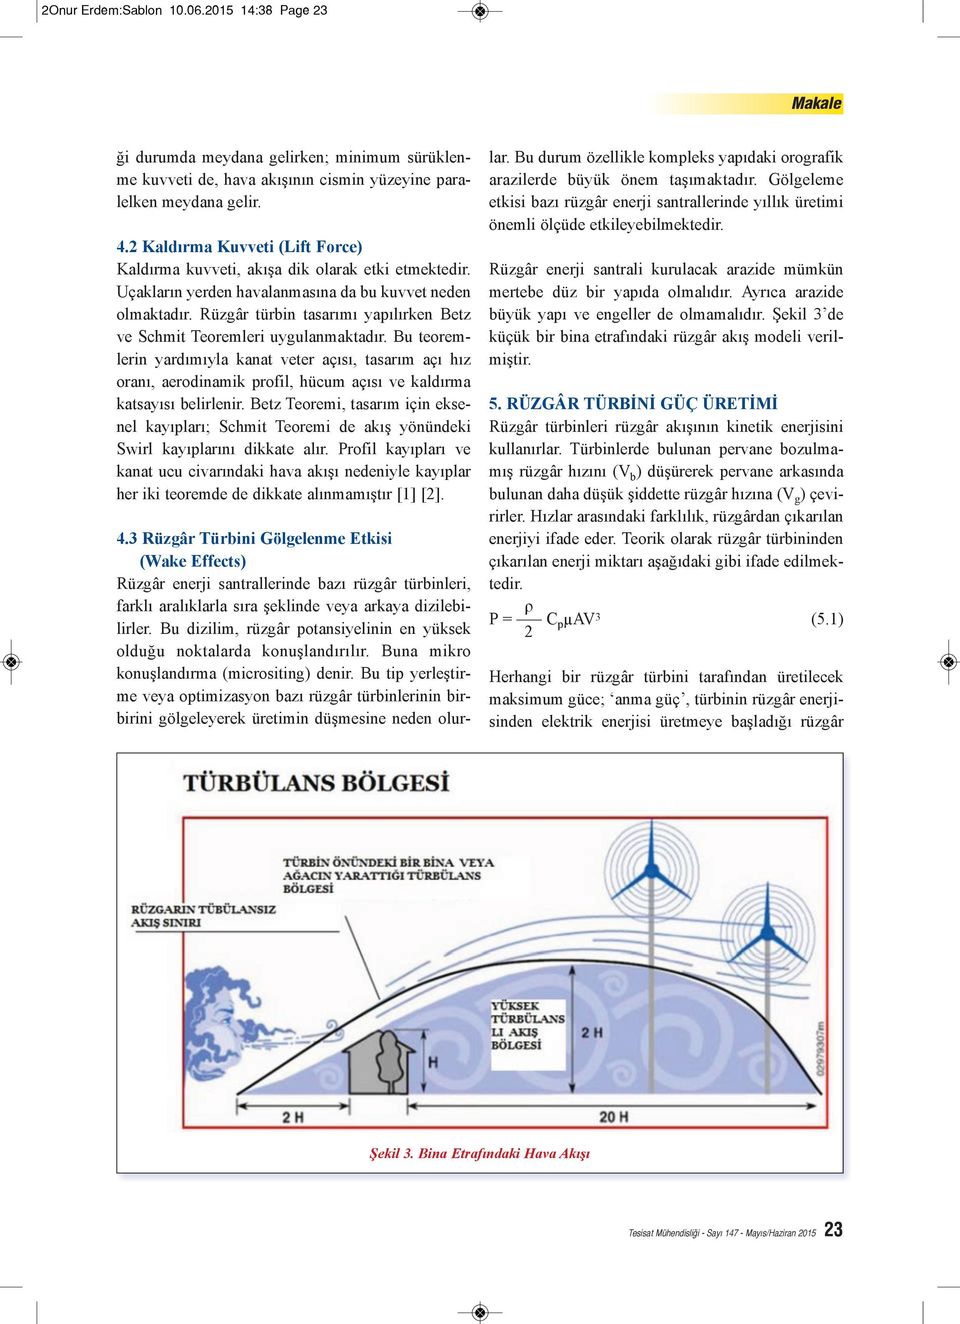 Rüzgâr türbin tasarımı yapılırken Betz ve Schmit Teoremleri uygulanmaktadır.